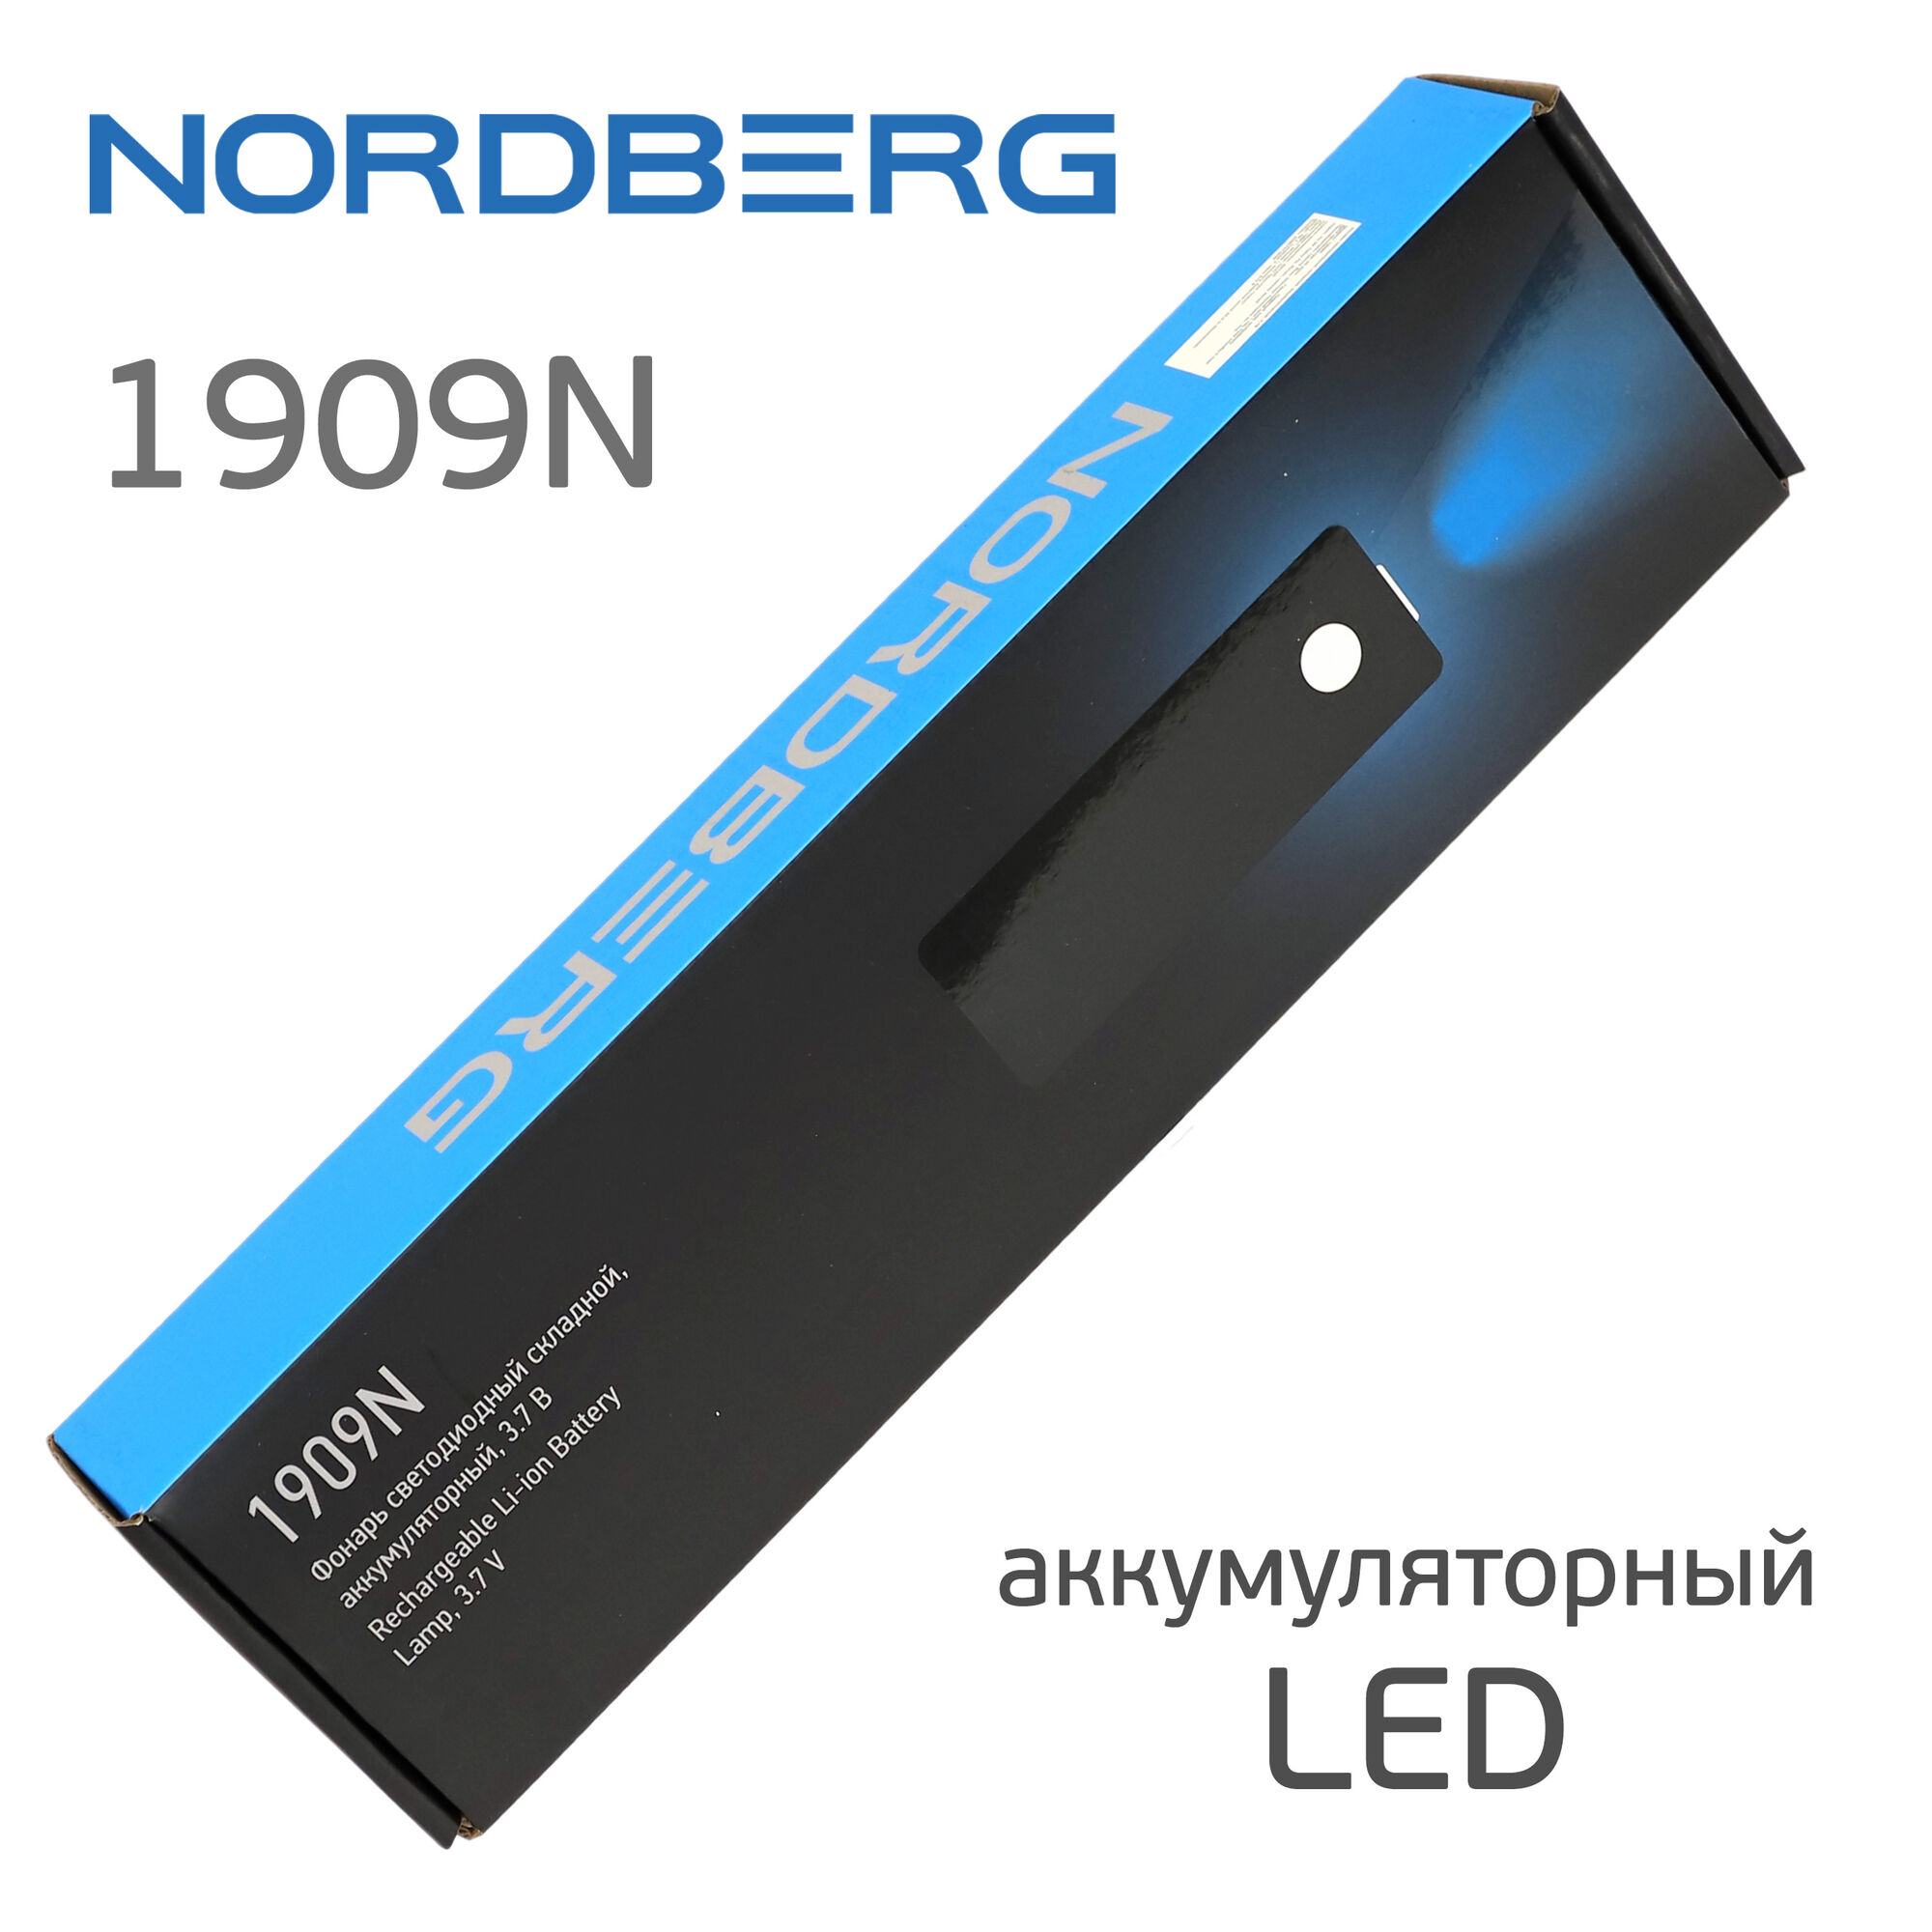 Фонарь светодиодный Nordberg 1909N (LED) аккумуляторный складной с магнитом и подвесом 4